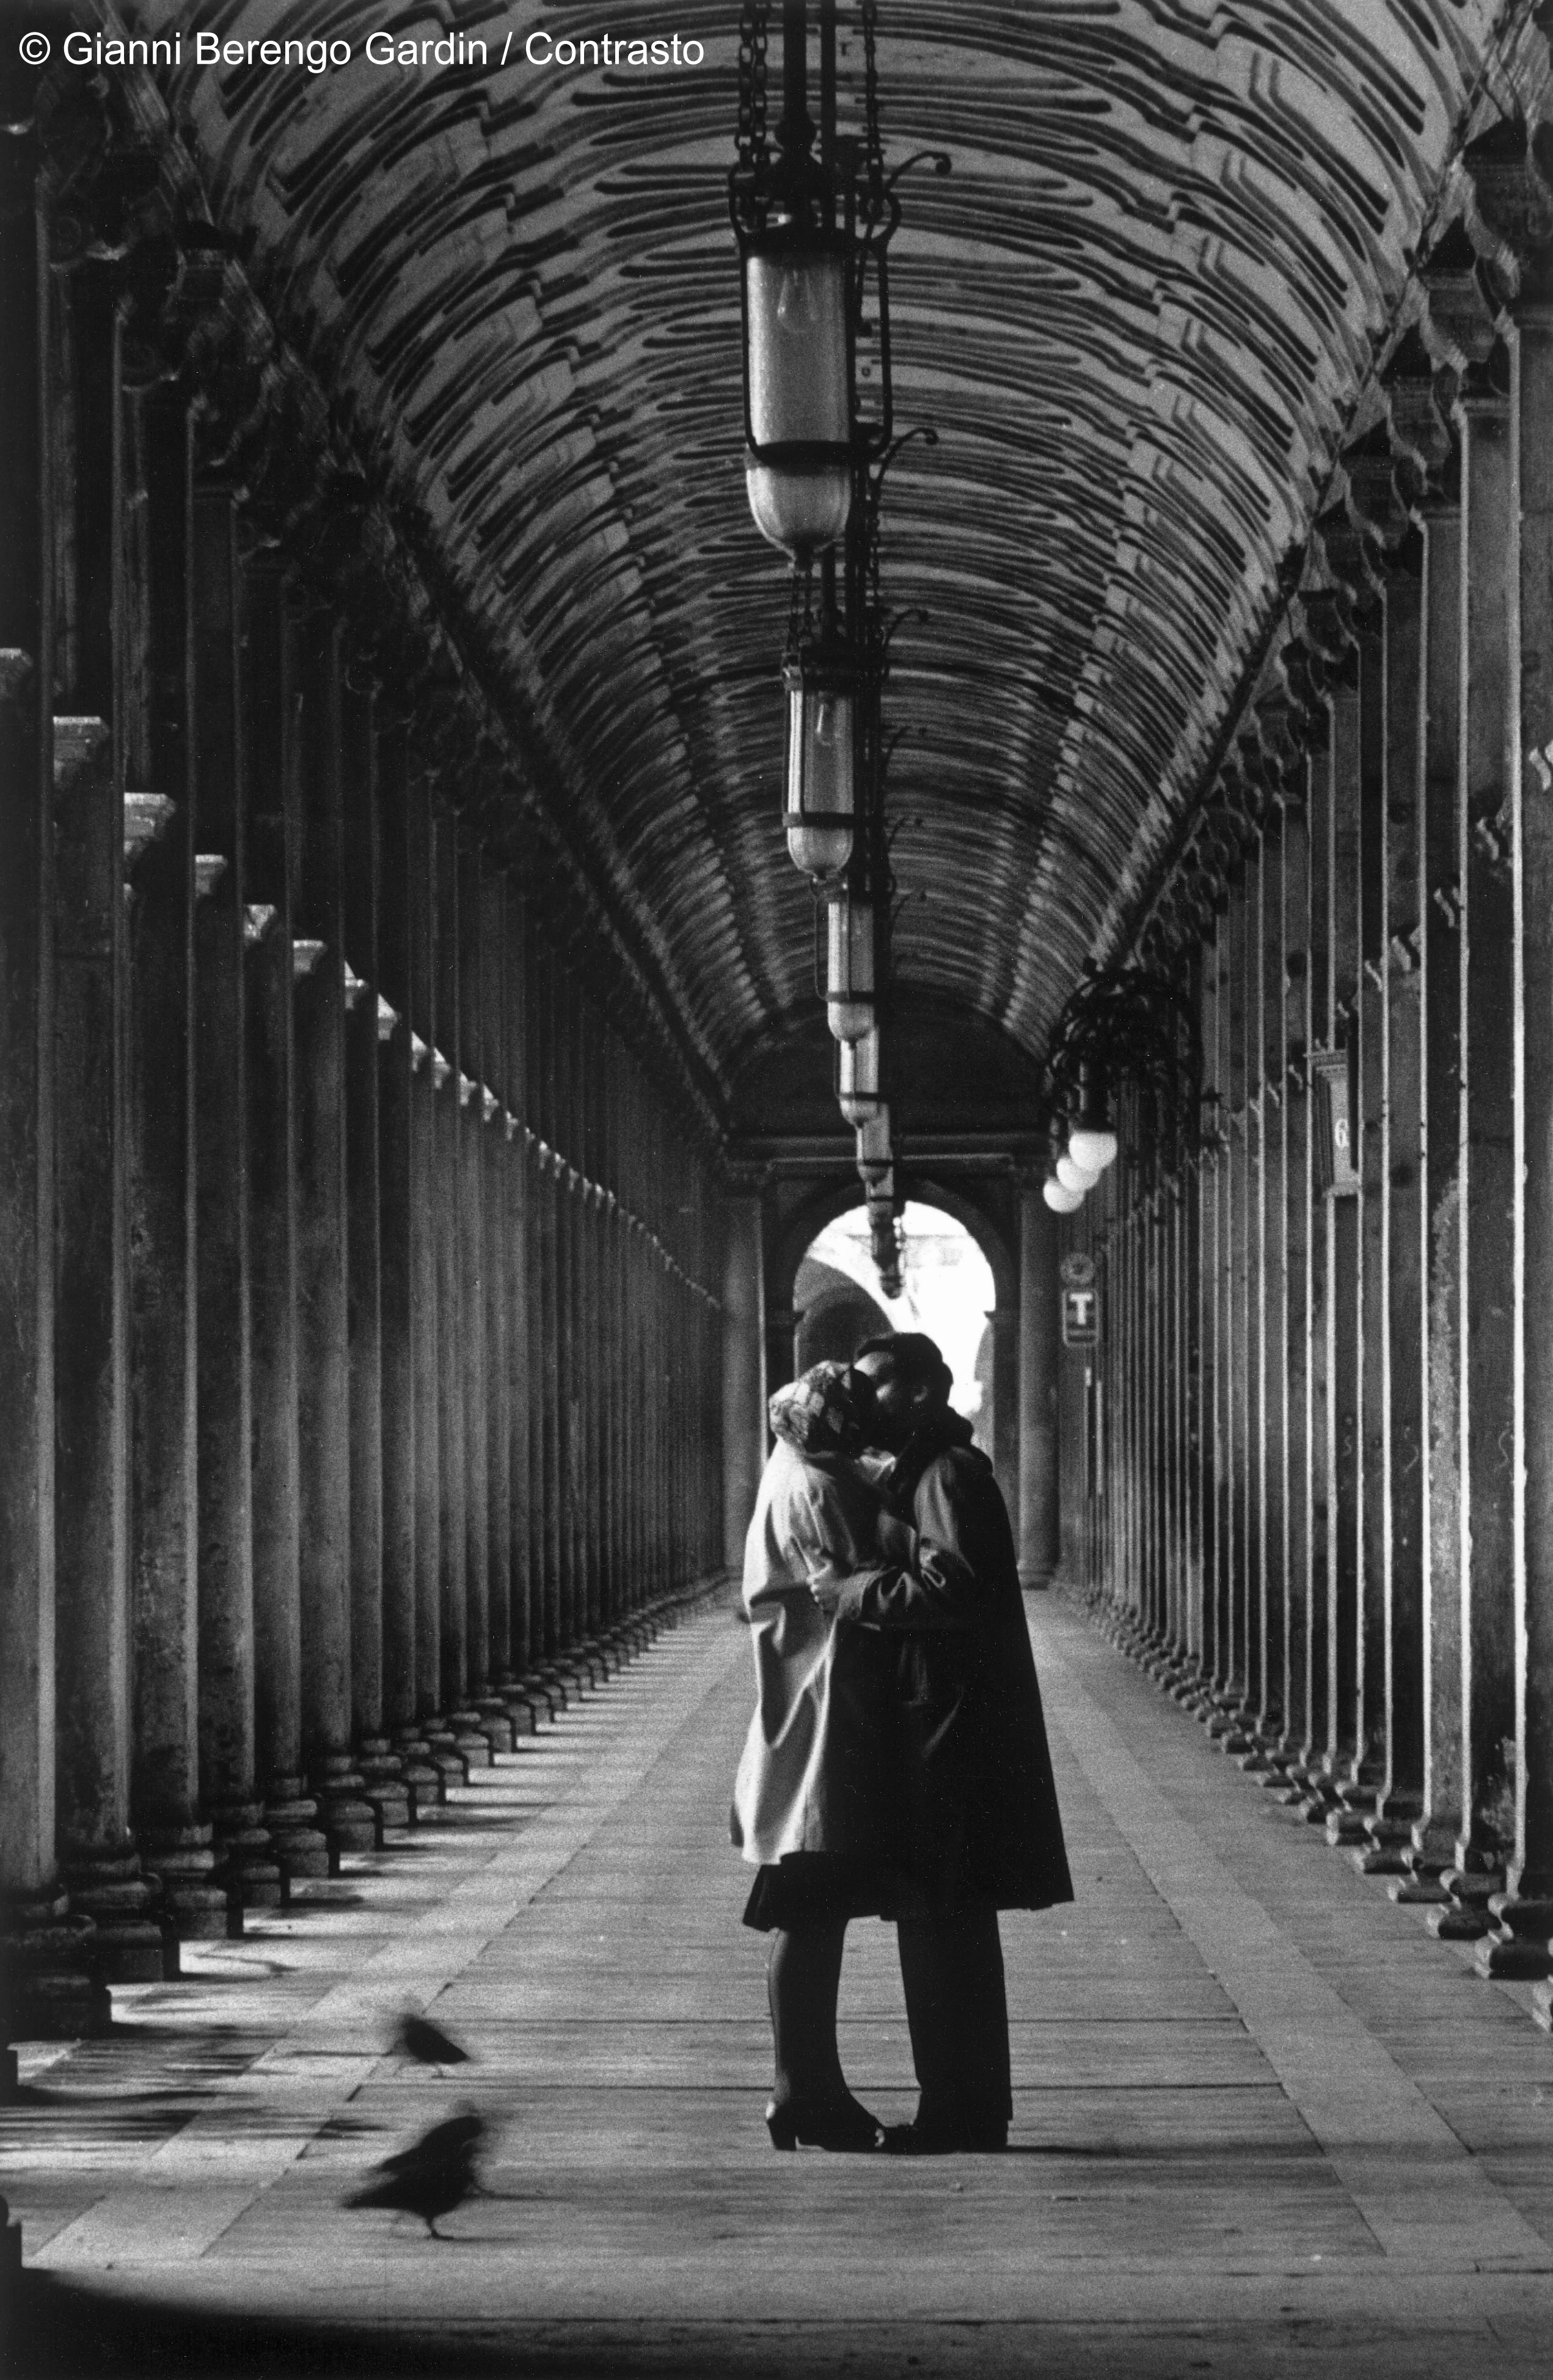 G. Berengo Gardin, Venezia, Piazza San Marco, 1959
© 2014 Gianni Berengo Gardin/Contrasto